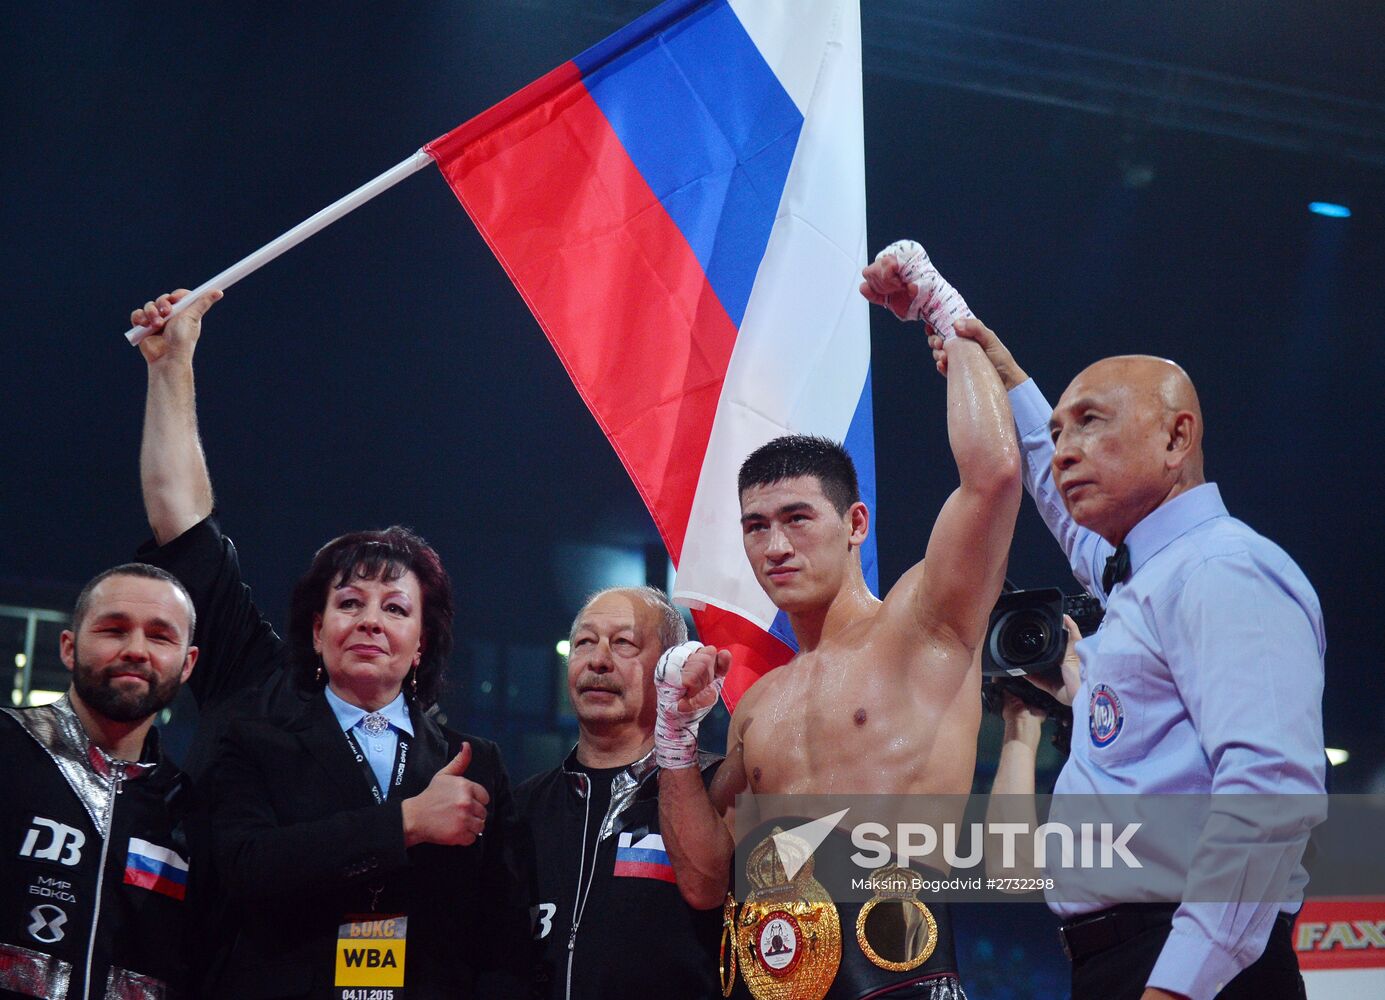 Boxing show in Kazan